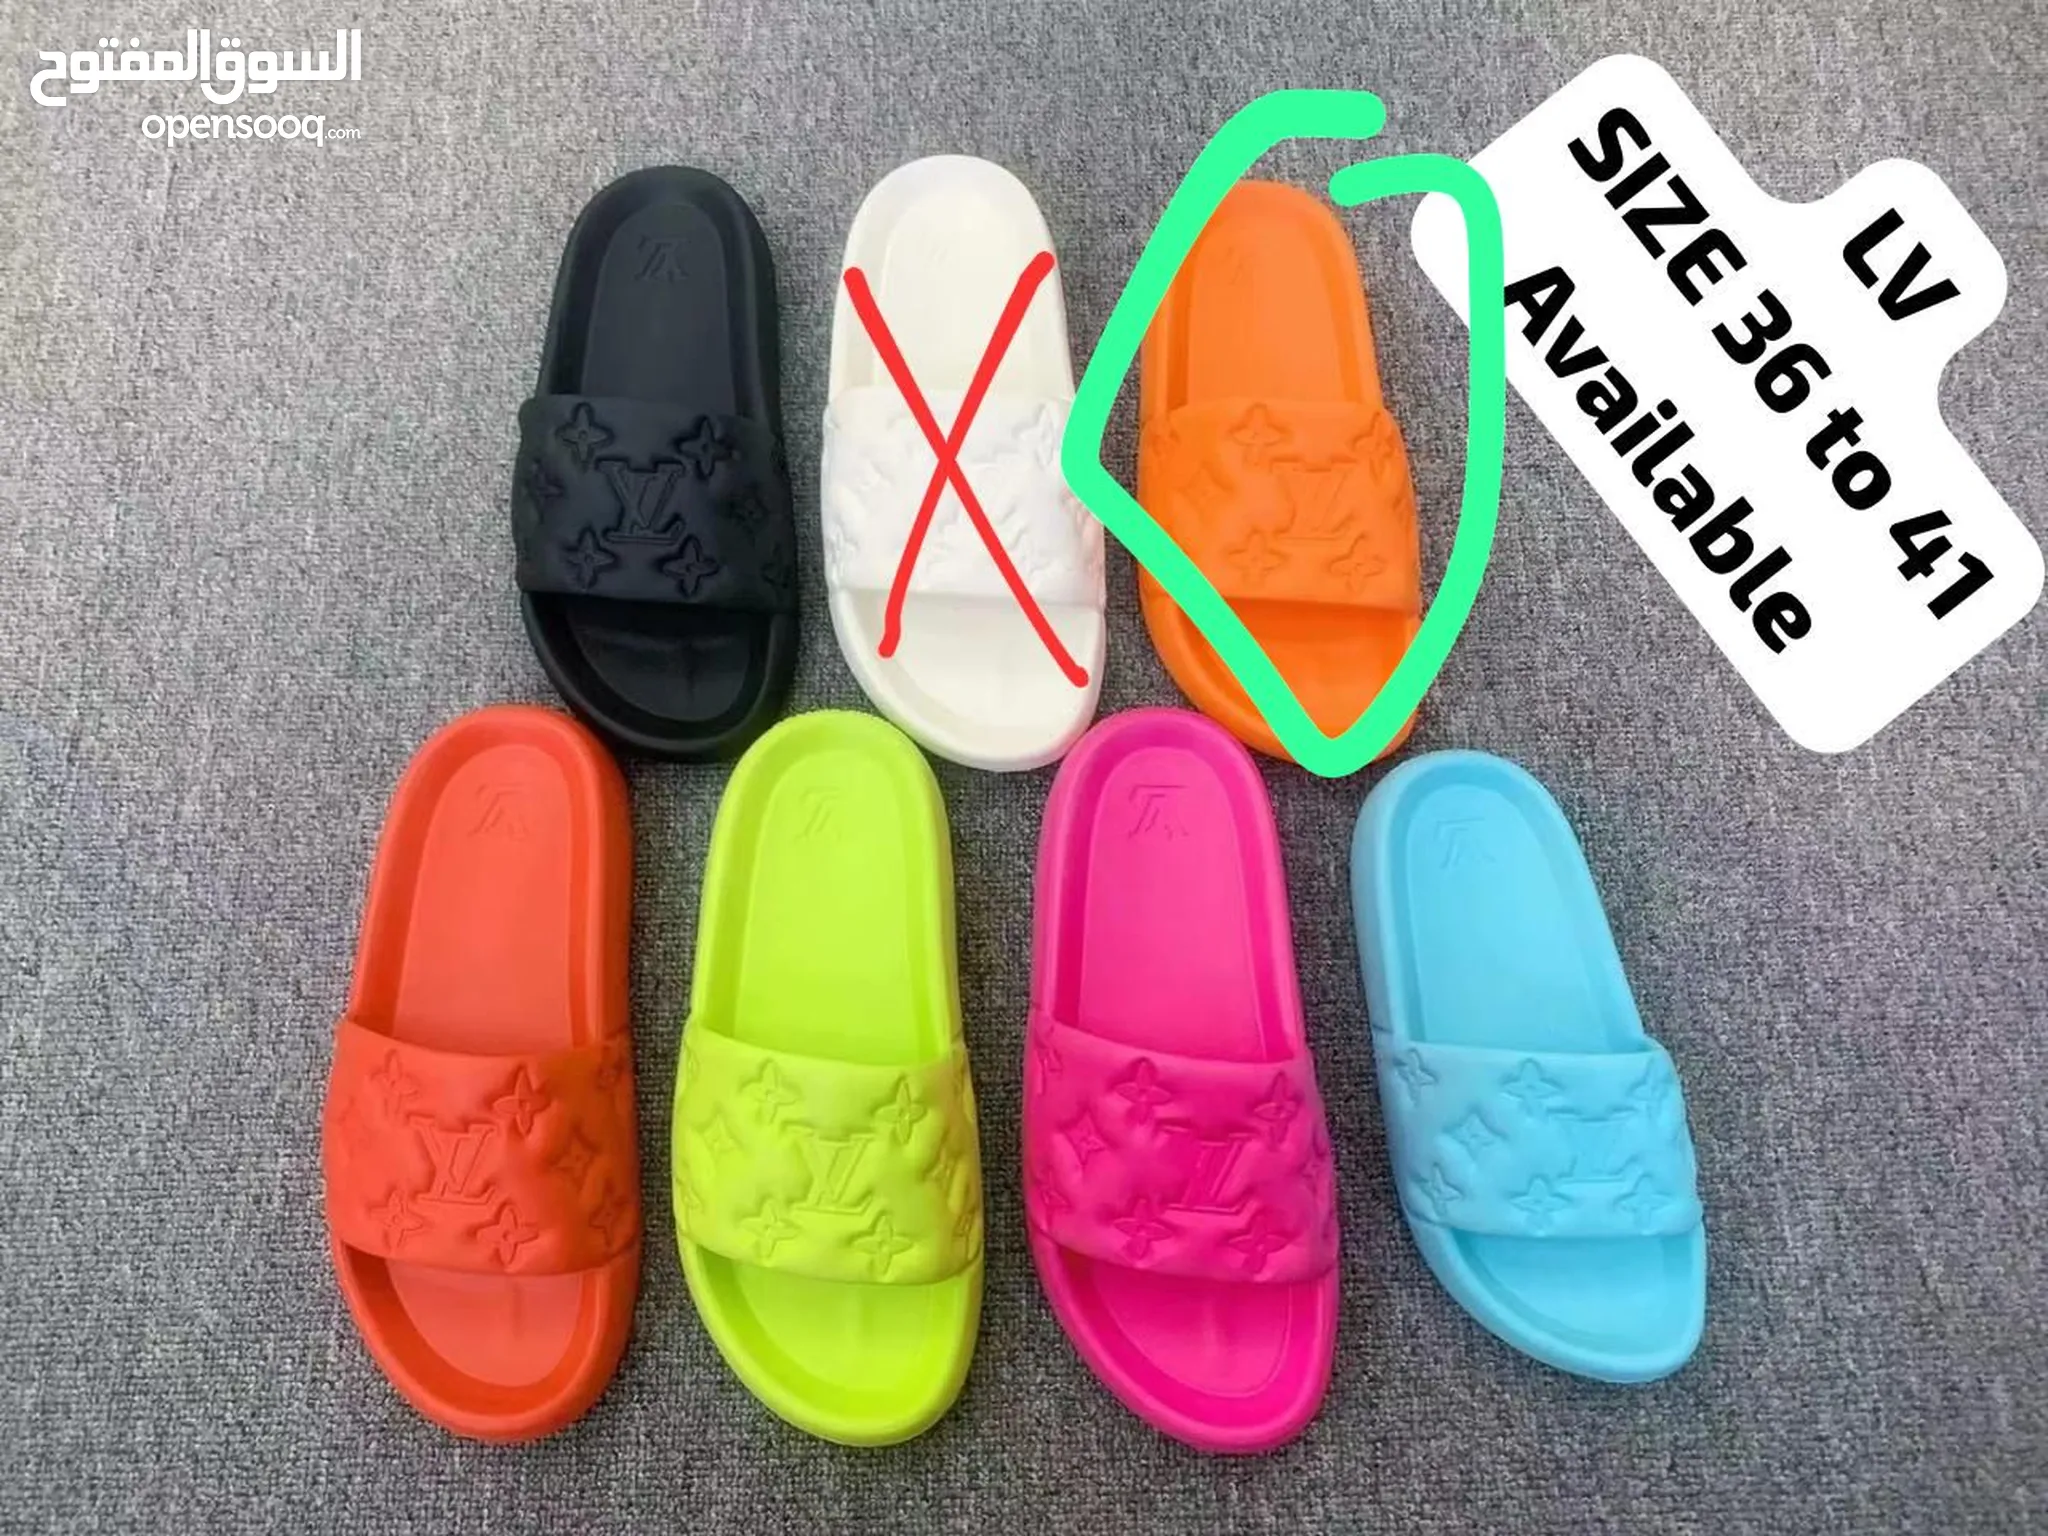 احذية أخرى شباشب وفليب فلوب للبيع : افضل الاسعار في دبي | السوق المفتوح